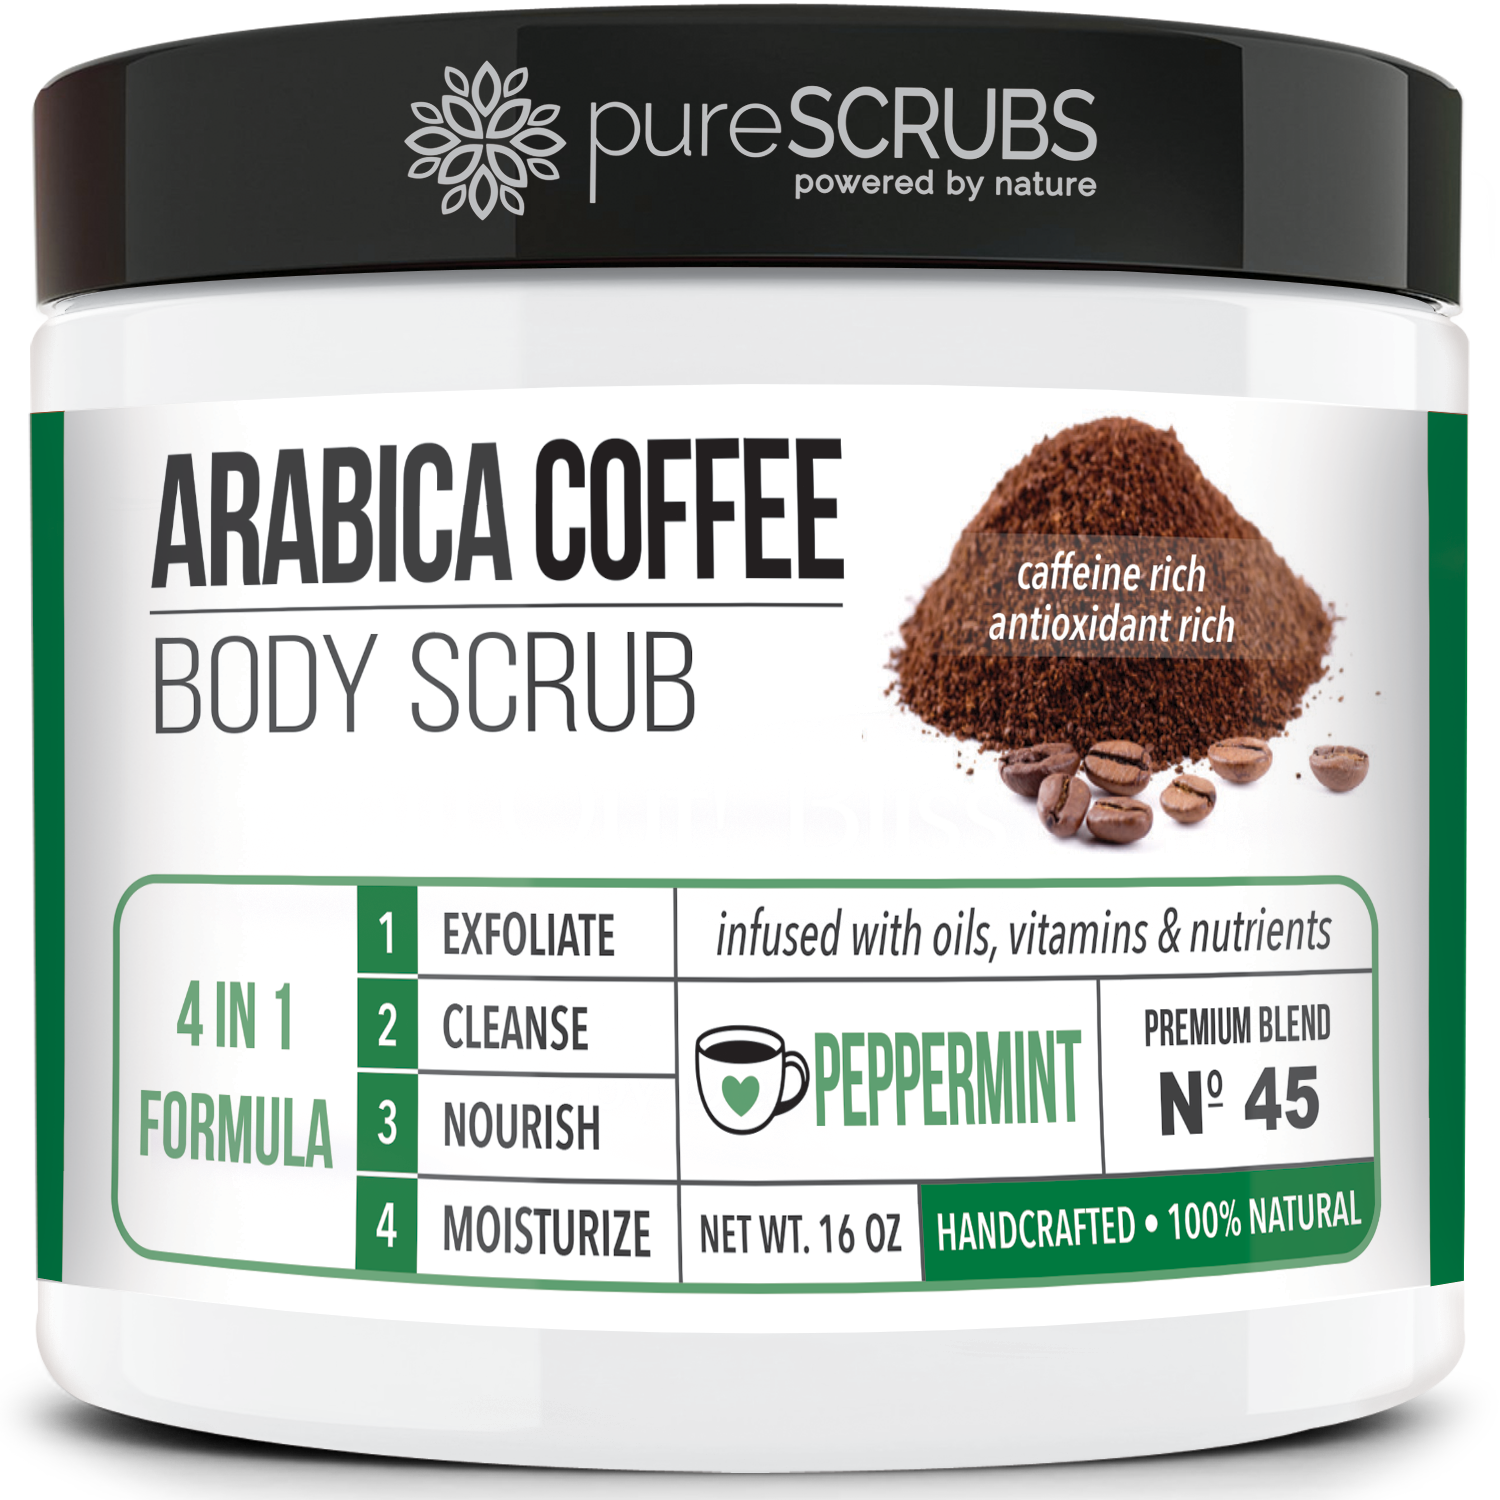 Peppermint Body Scrub / Arabica Coffee / Premium Blend #45